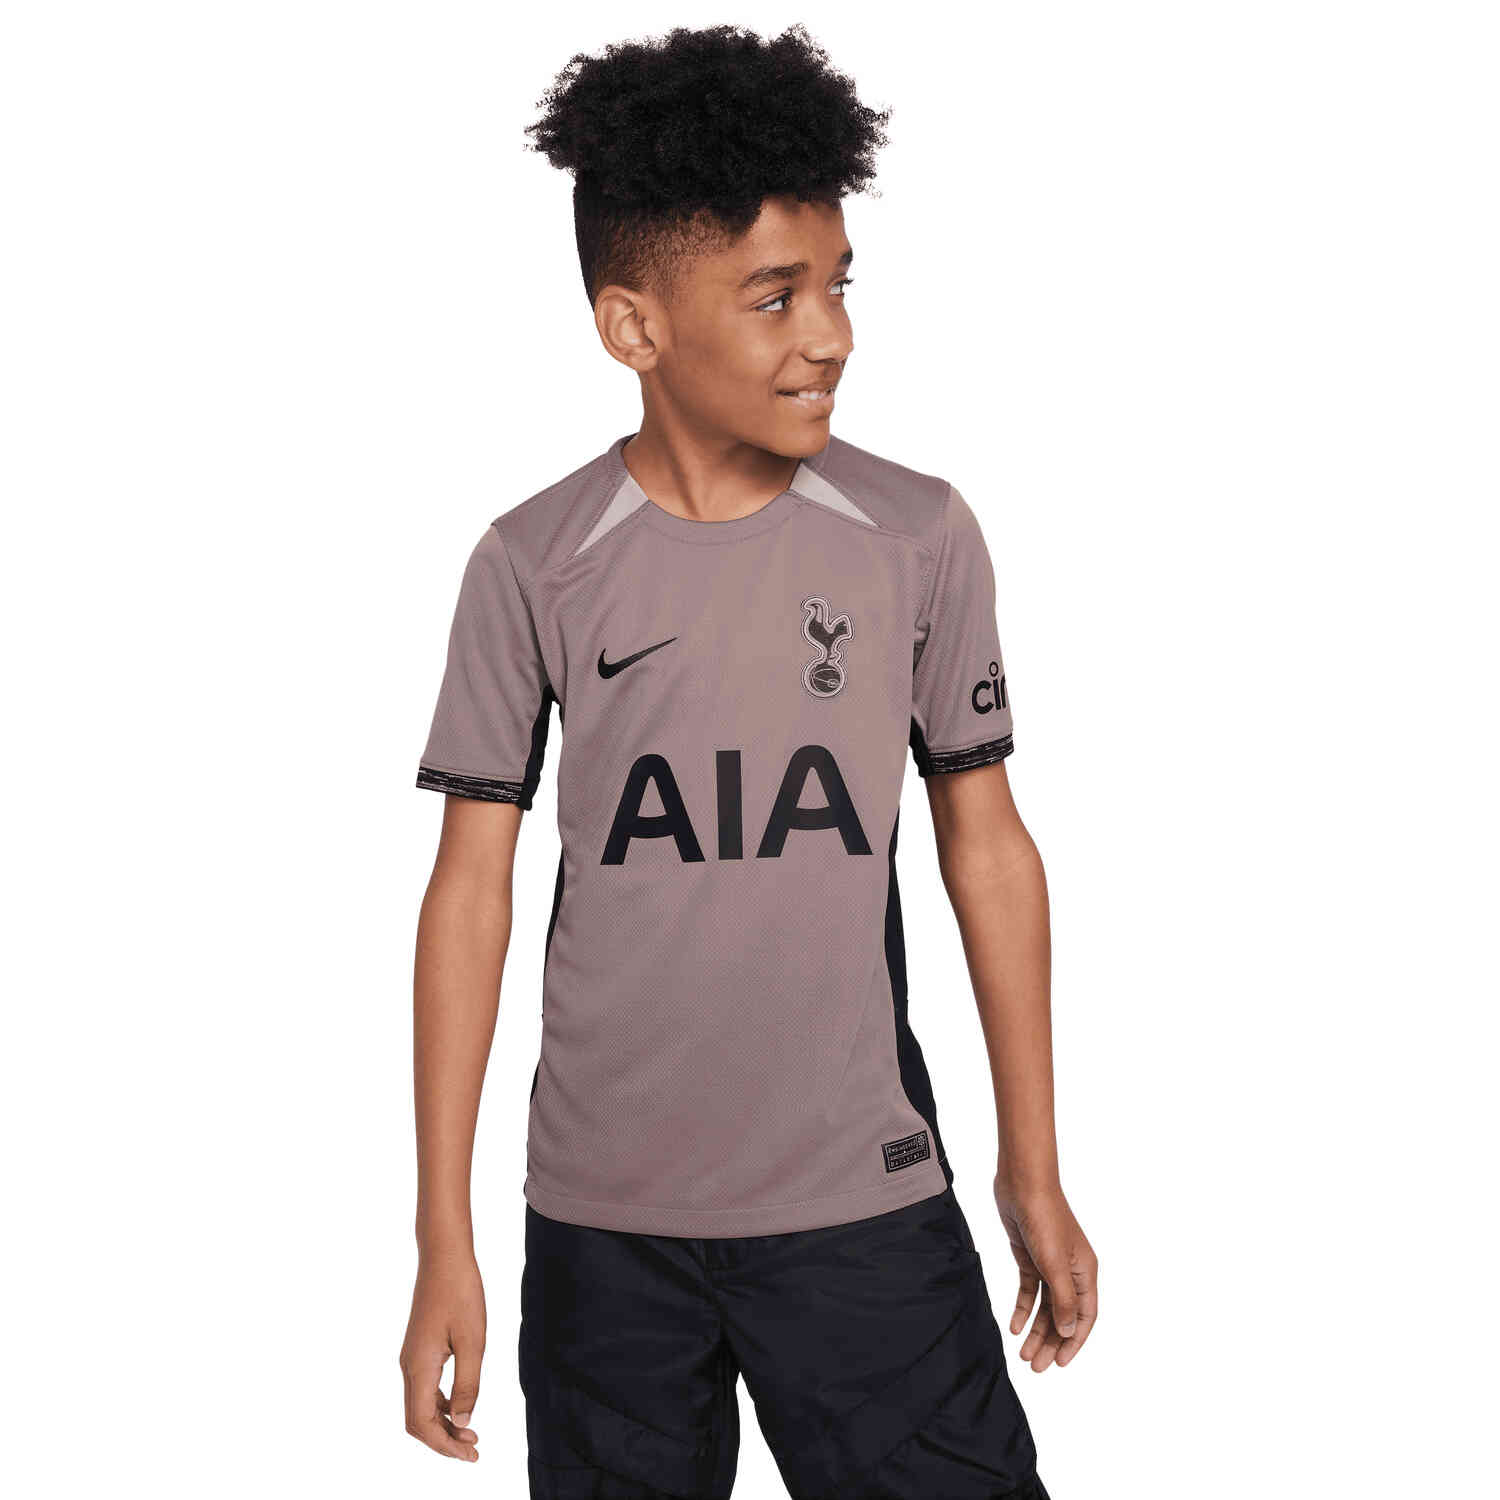 Buy Tottenham Hotspur Kit,Tottenham Hotspur Kit Sale,Kids 18/19